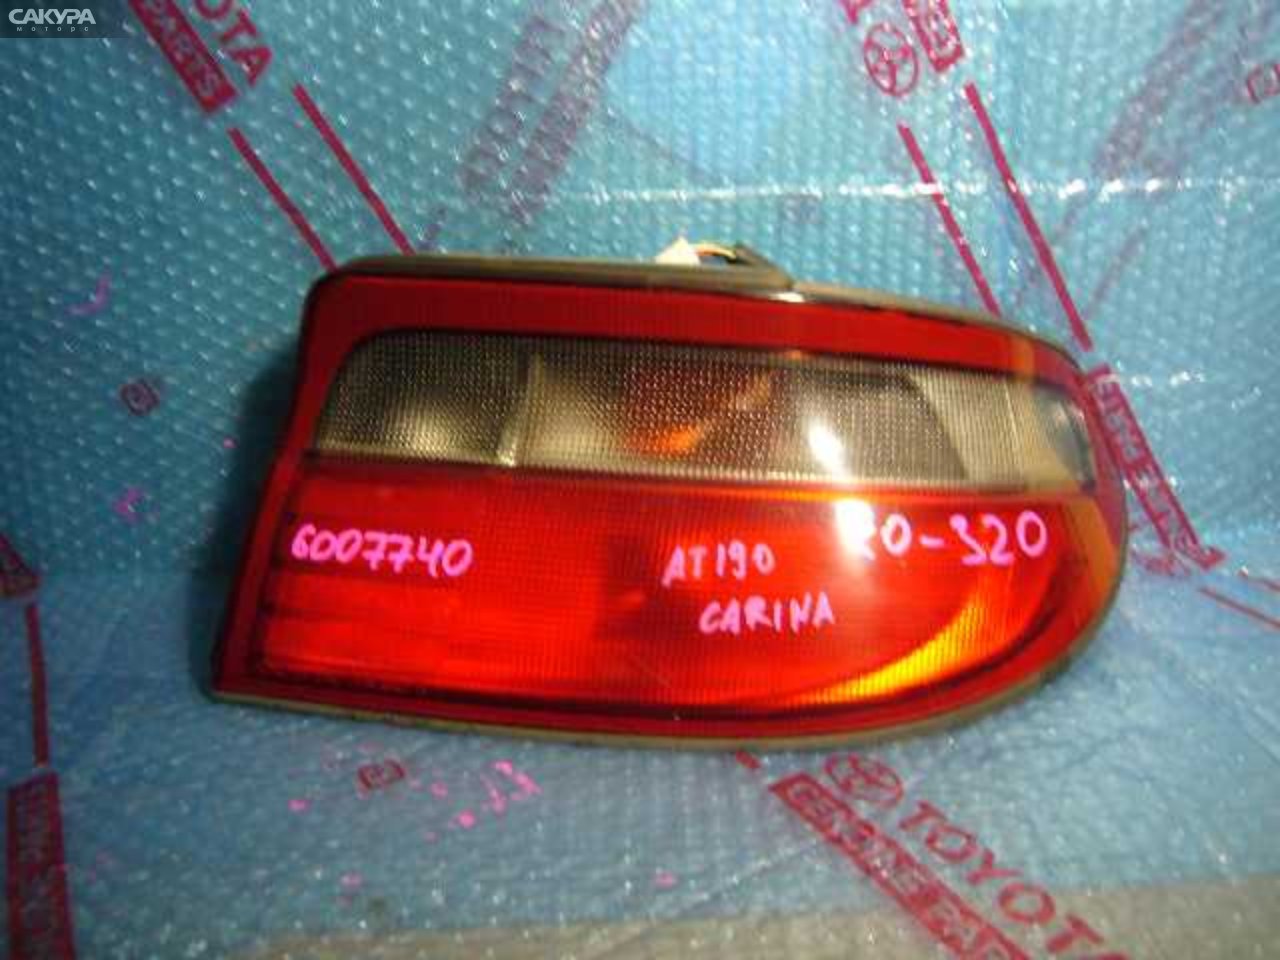 Фонарь стоп-сигнала правый Toyota Carina AT190 20-320: купить в Сакура Кемерово.